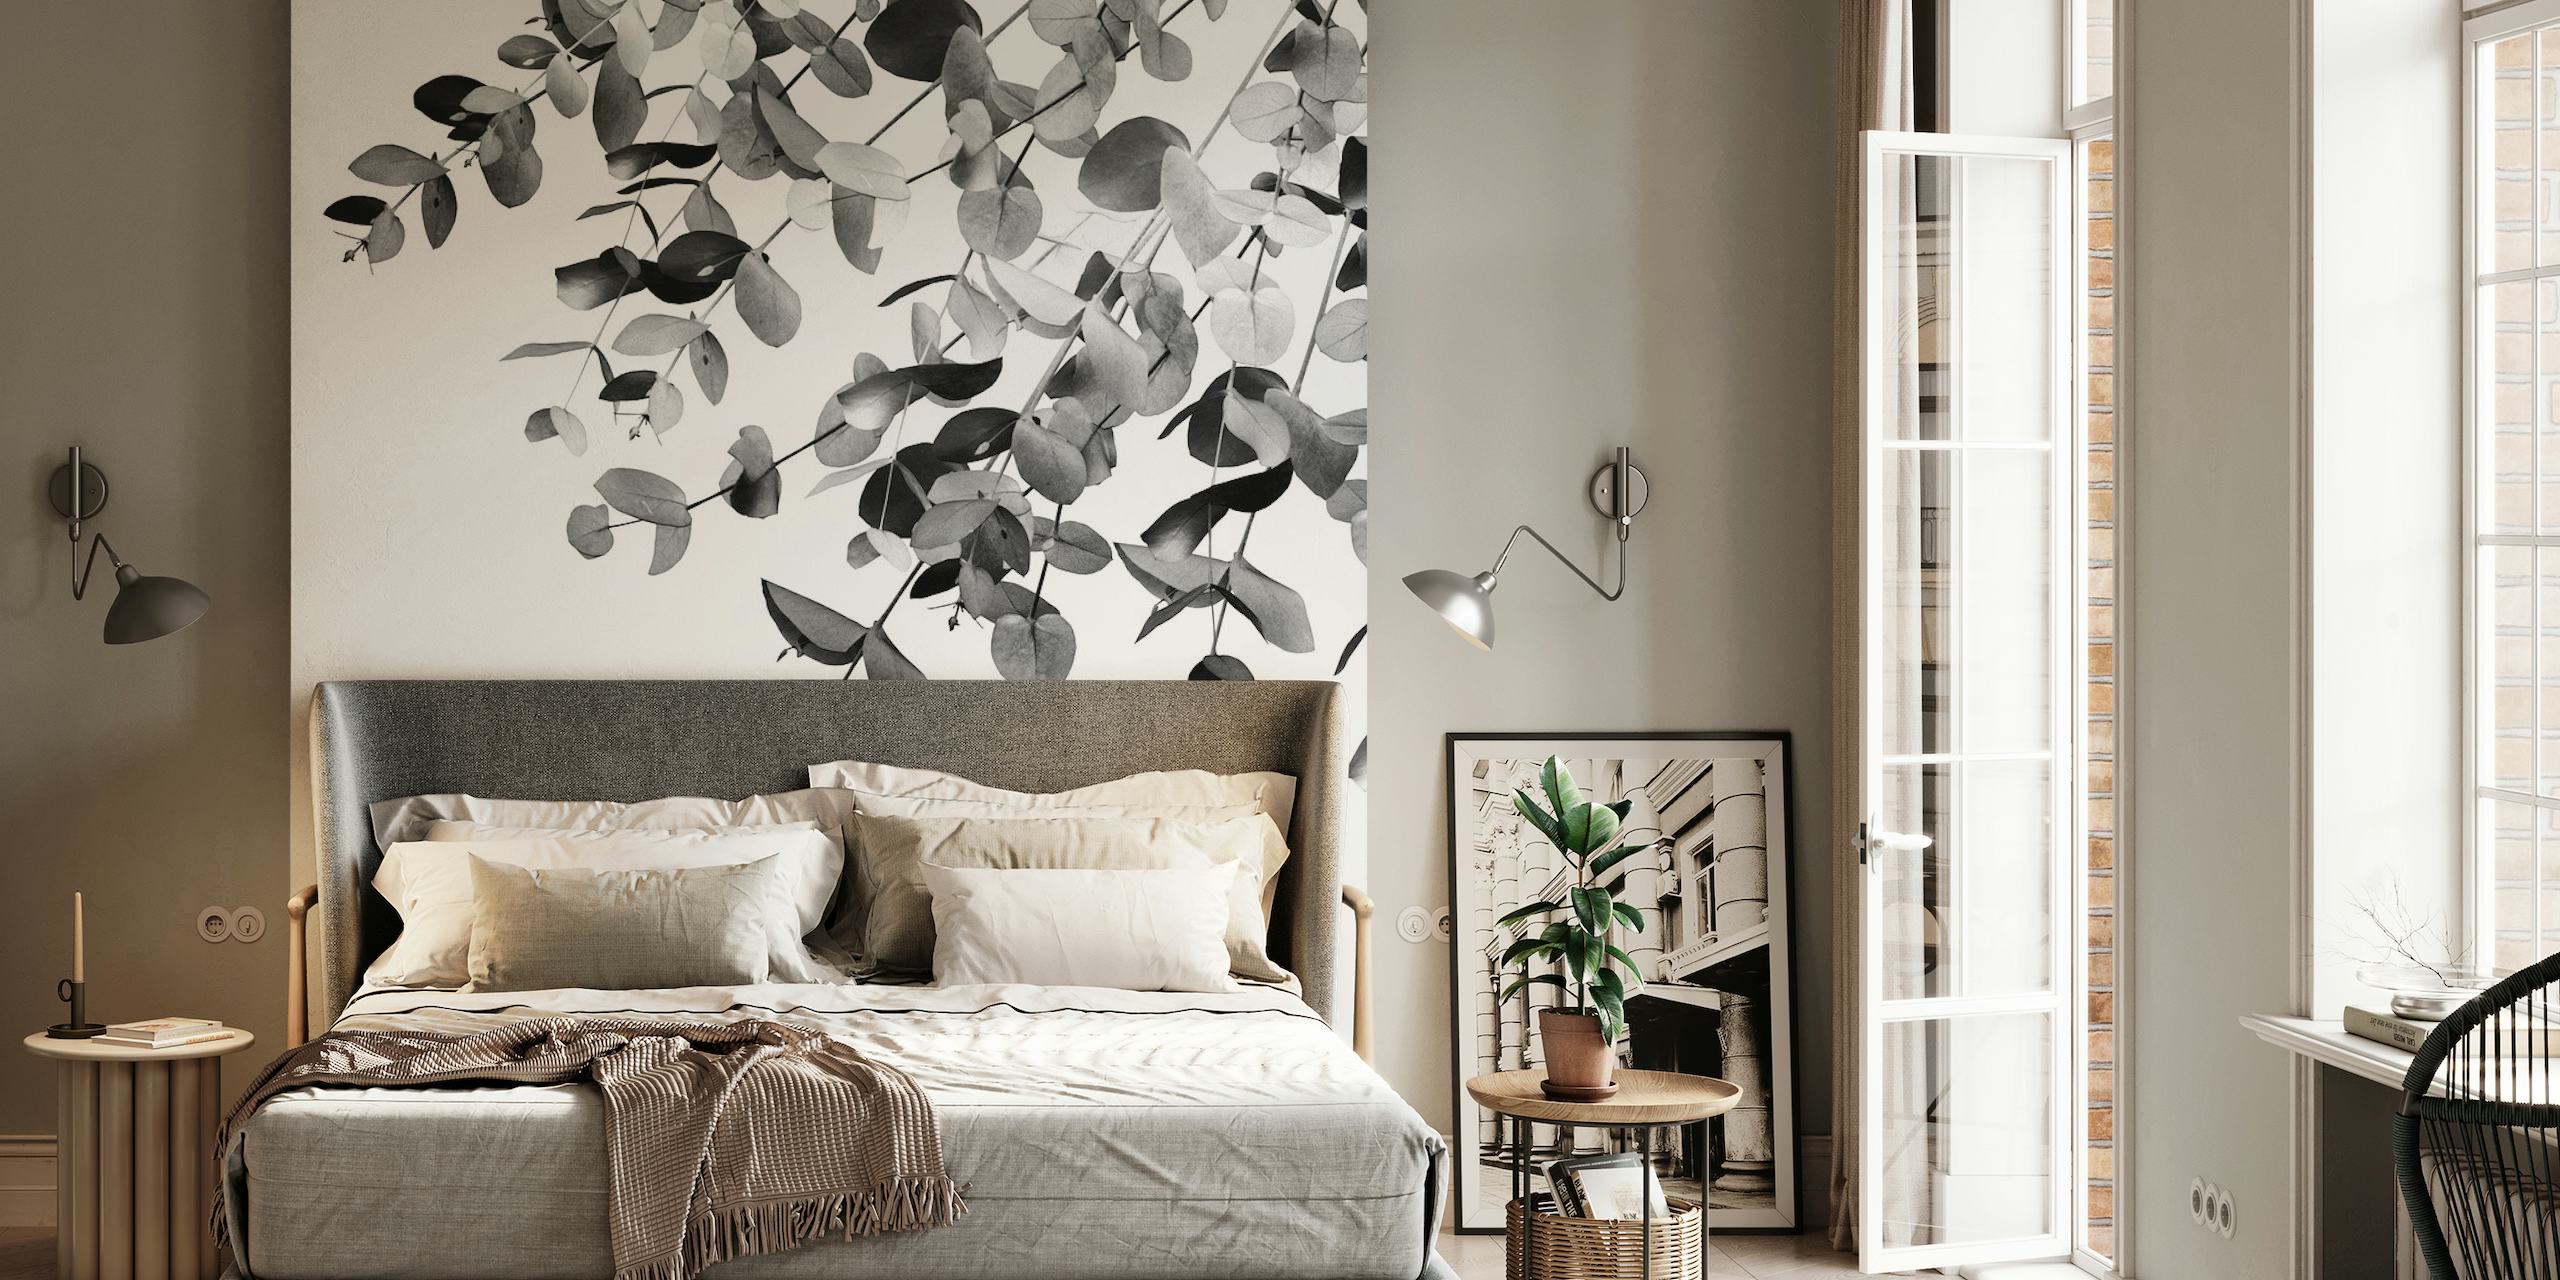 Yksivärinen eukalyptuslehtien seinämaalaus luo rauhallisen sisustuksen